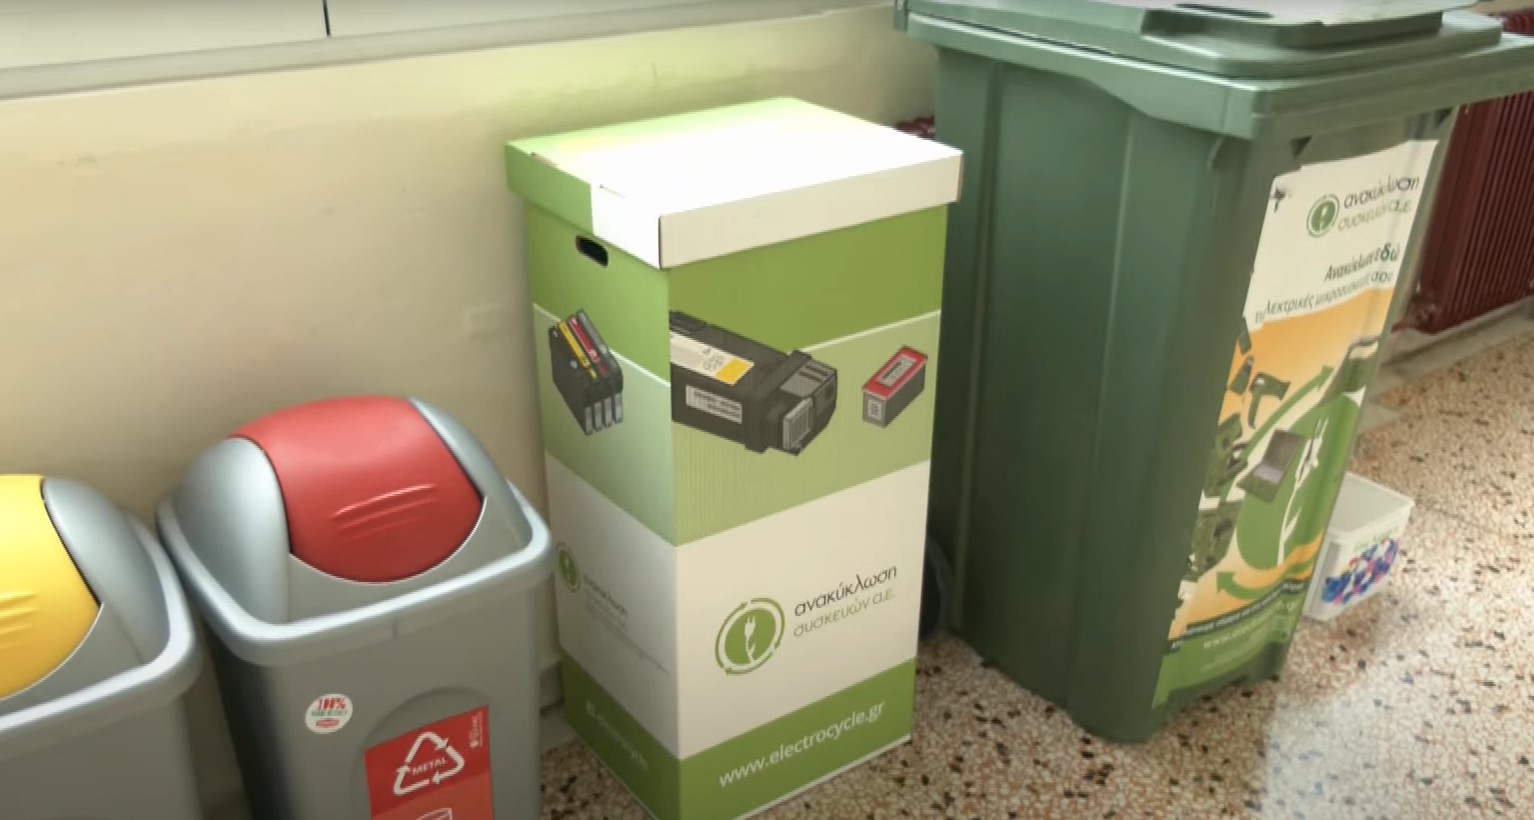 Γιαννιτσά: Ειδικά δοχεία ανακύκλωσης τοποθετούνται στα σχολεία